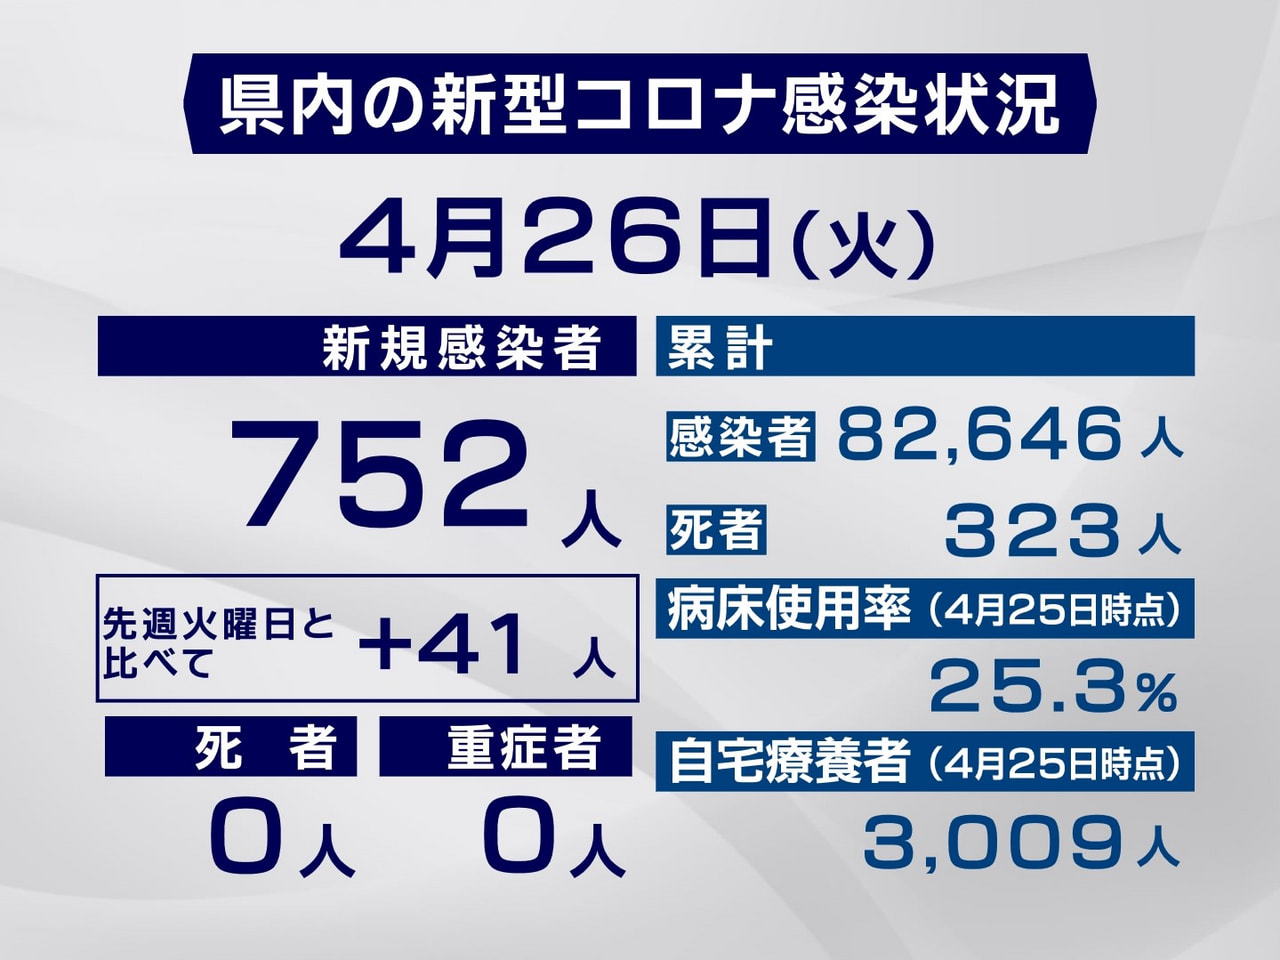 岐阜県は２６日、新型コロナウイルスの新規感染者が７５２人確認されたと発表しました...